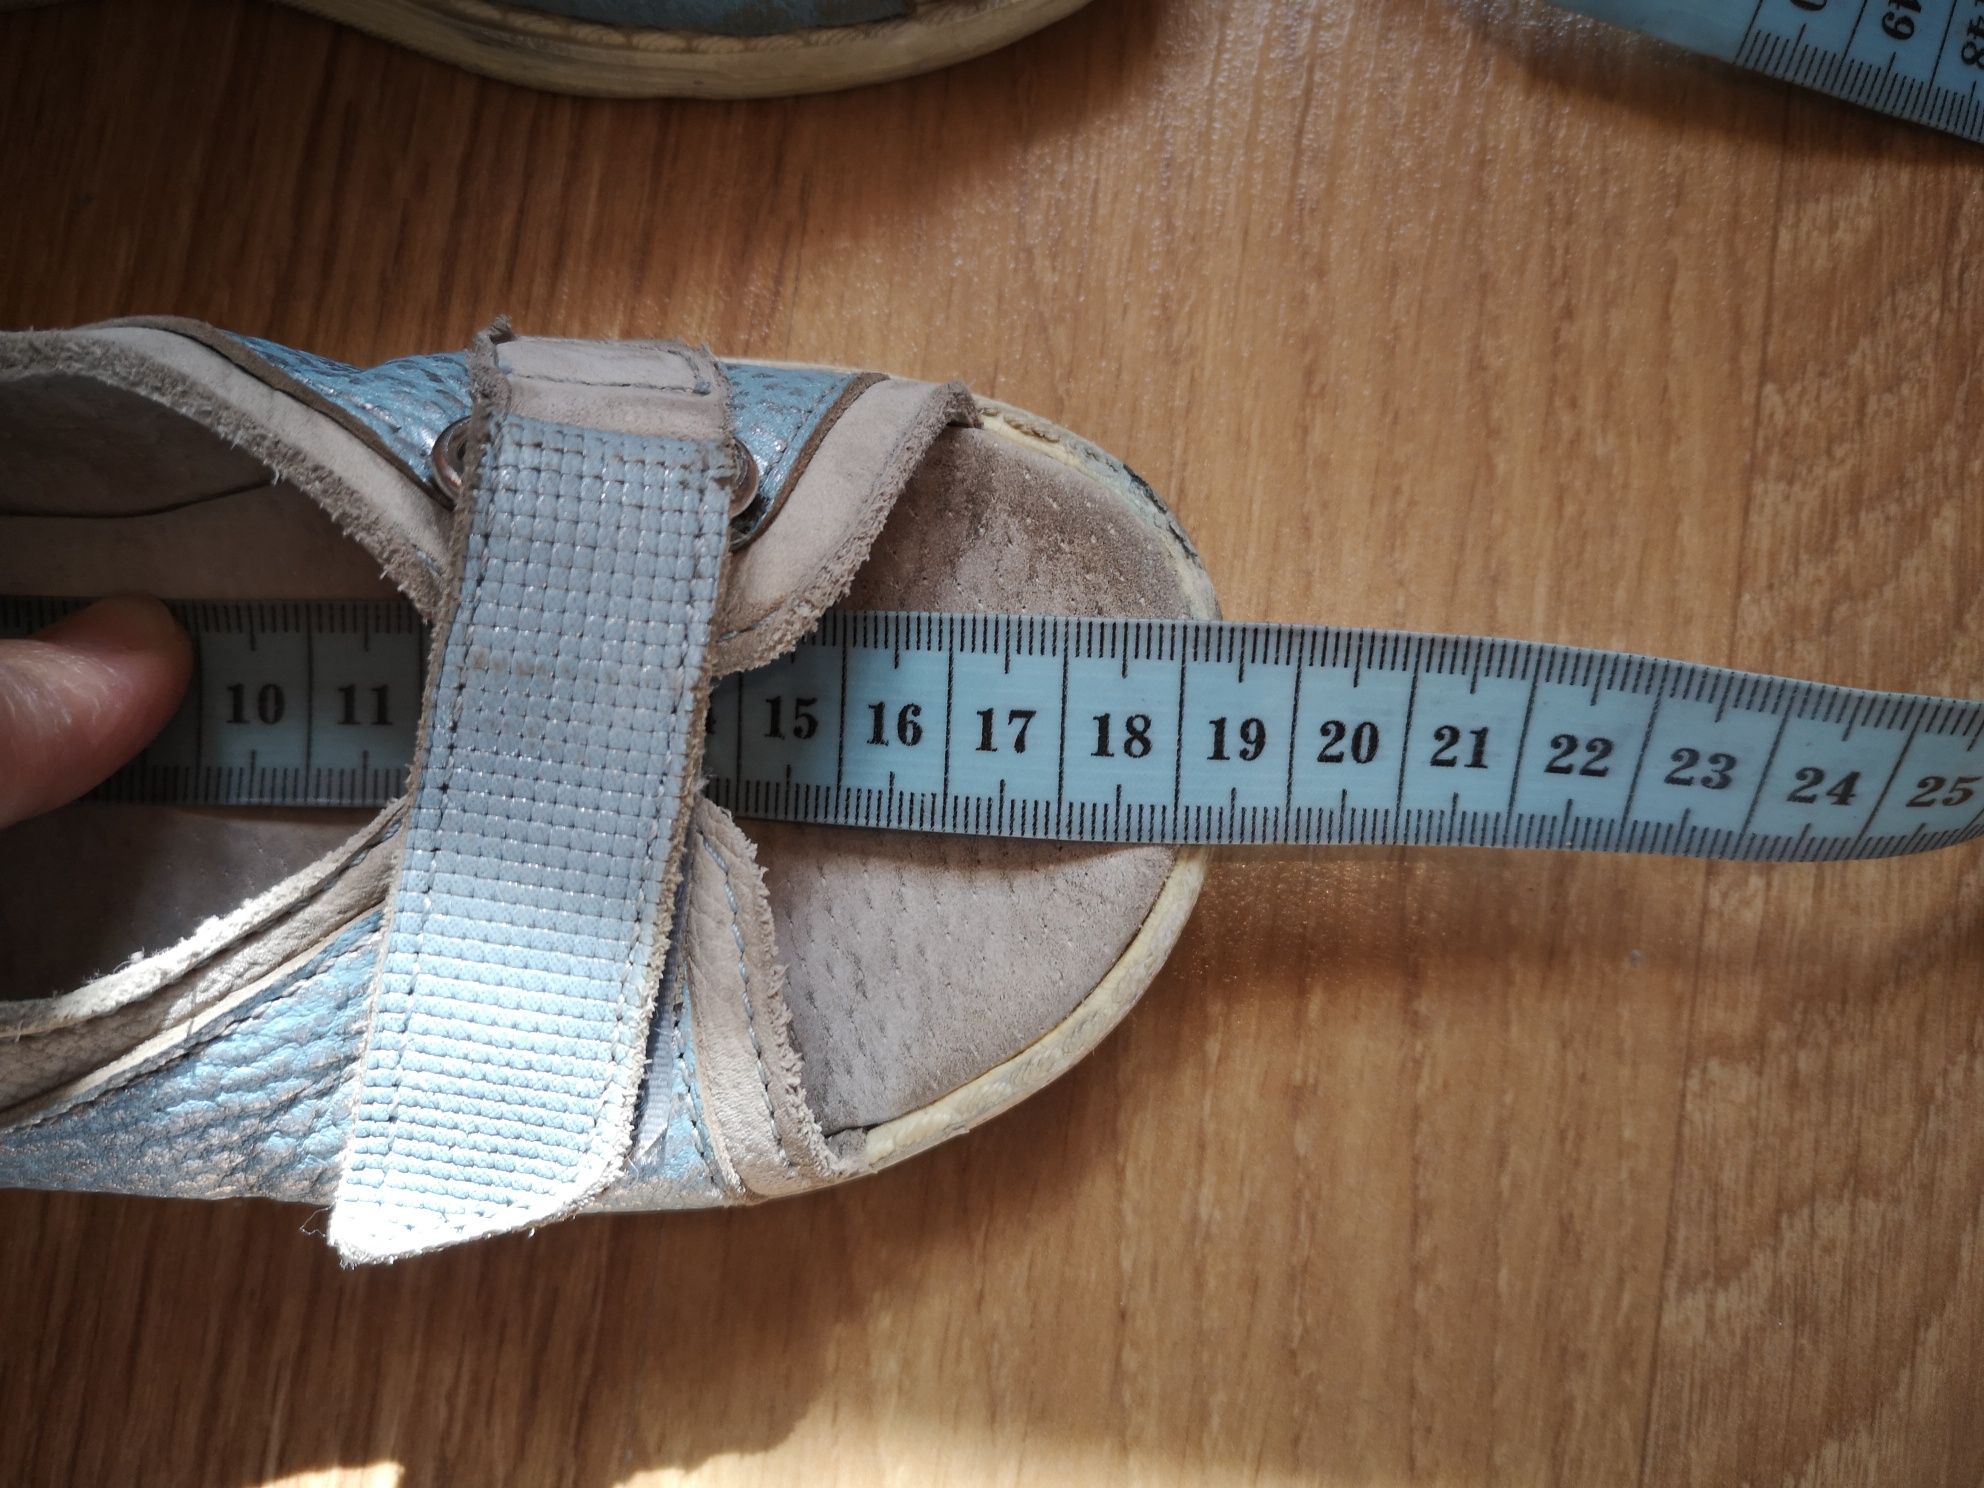 Sandałki Ren But, rozmiar 27, 18 cm, błękitne, profilaktyczne